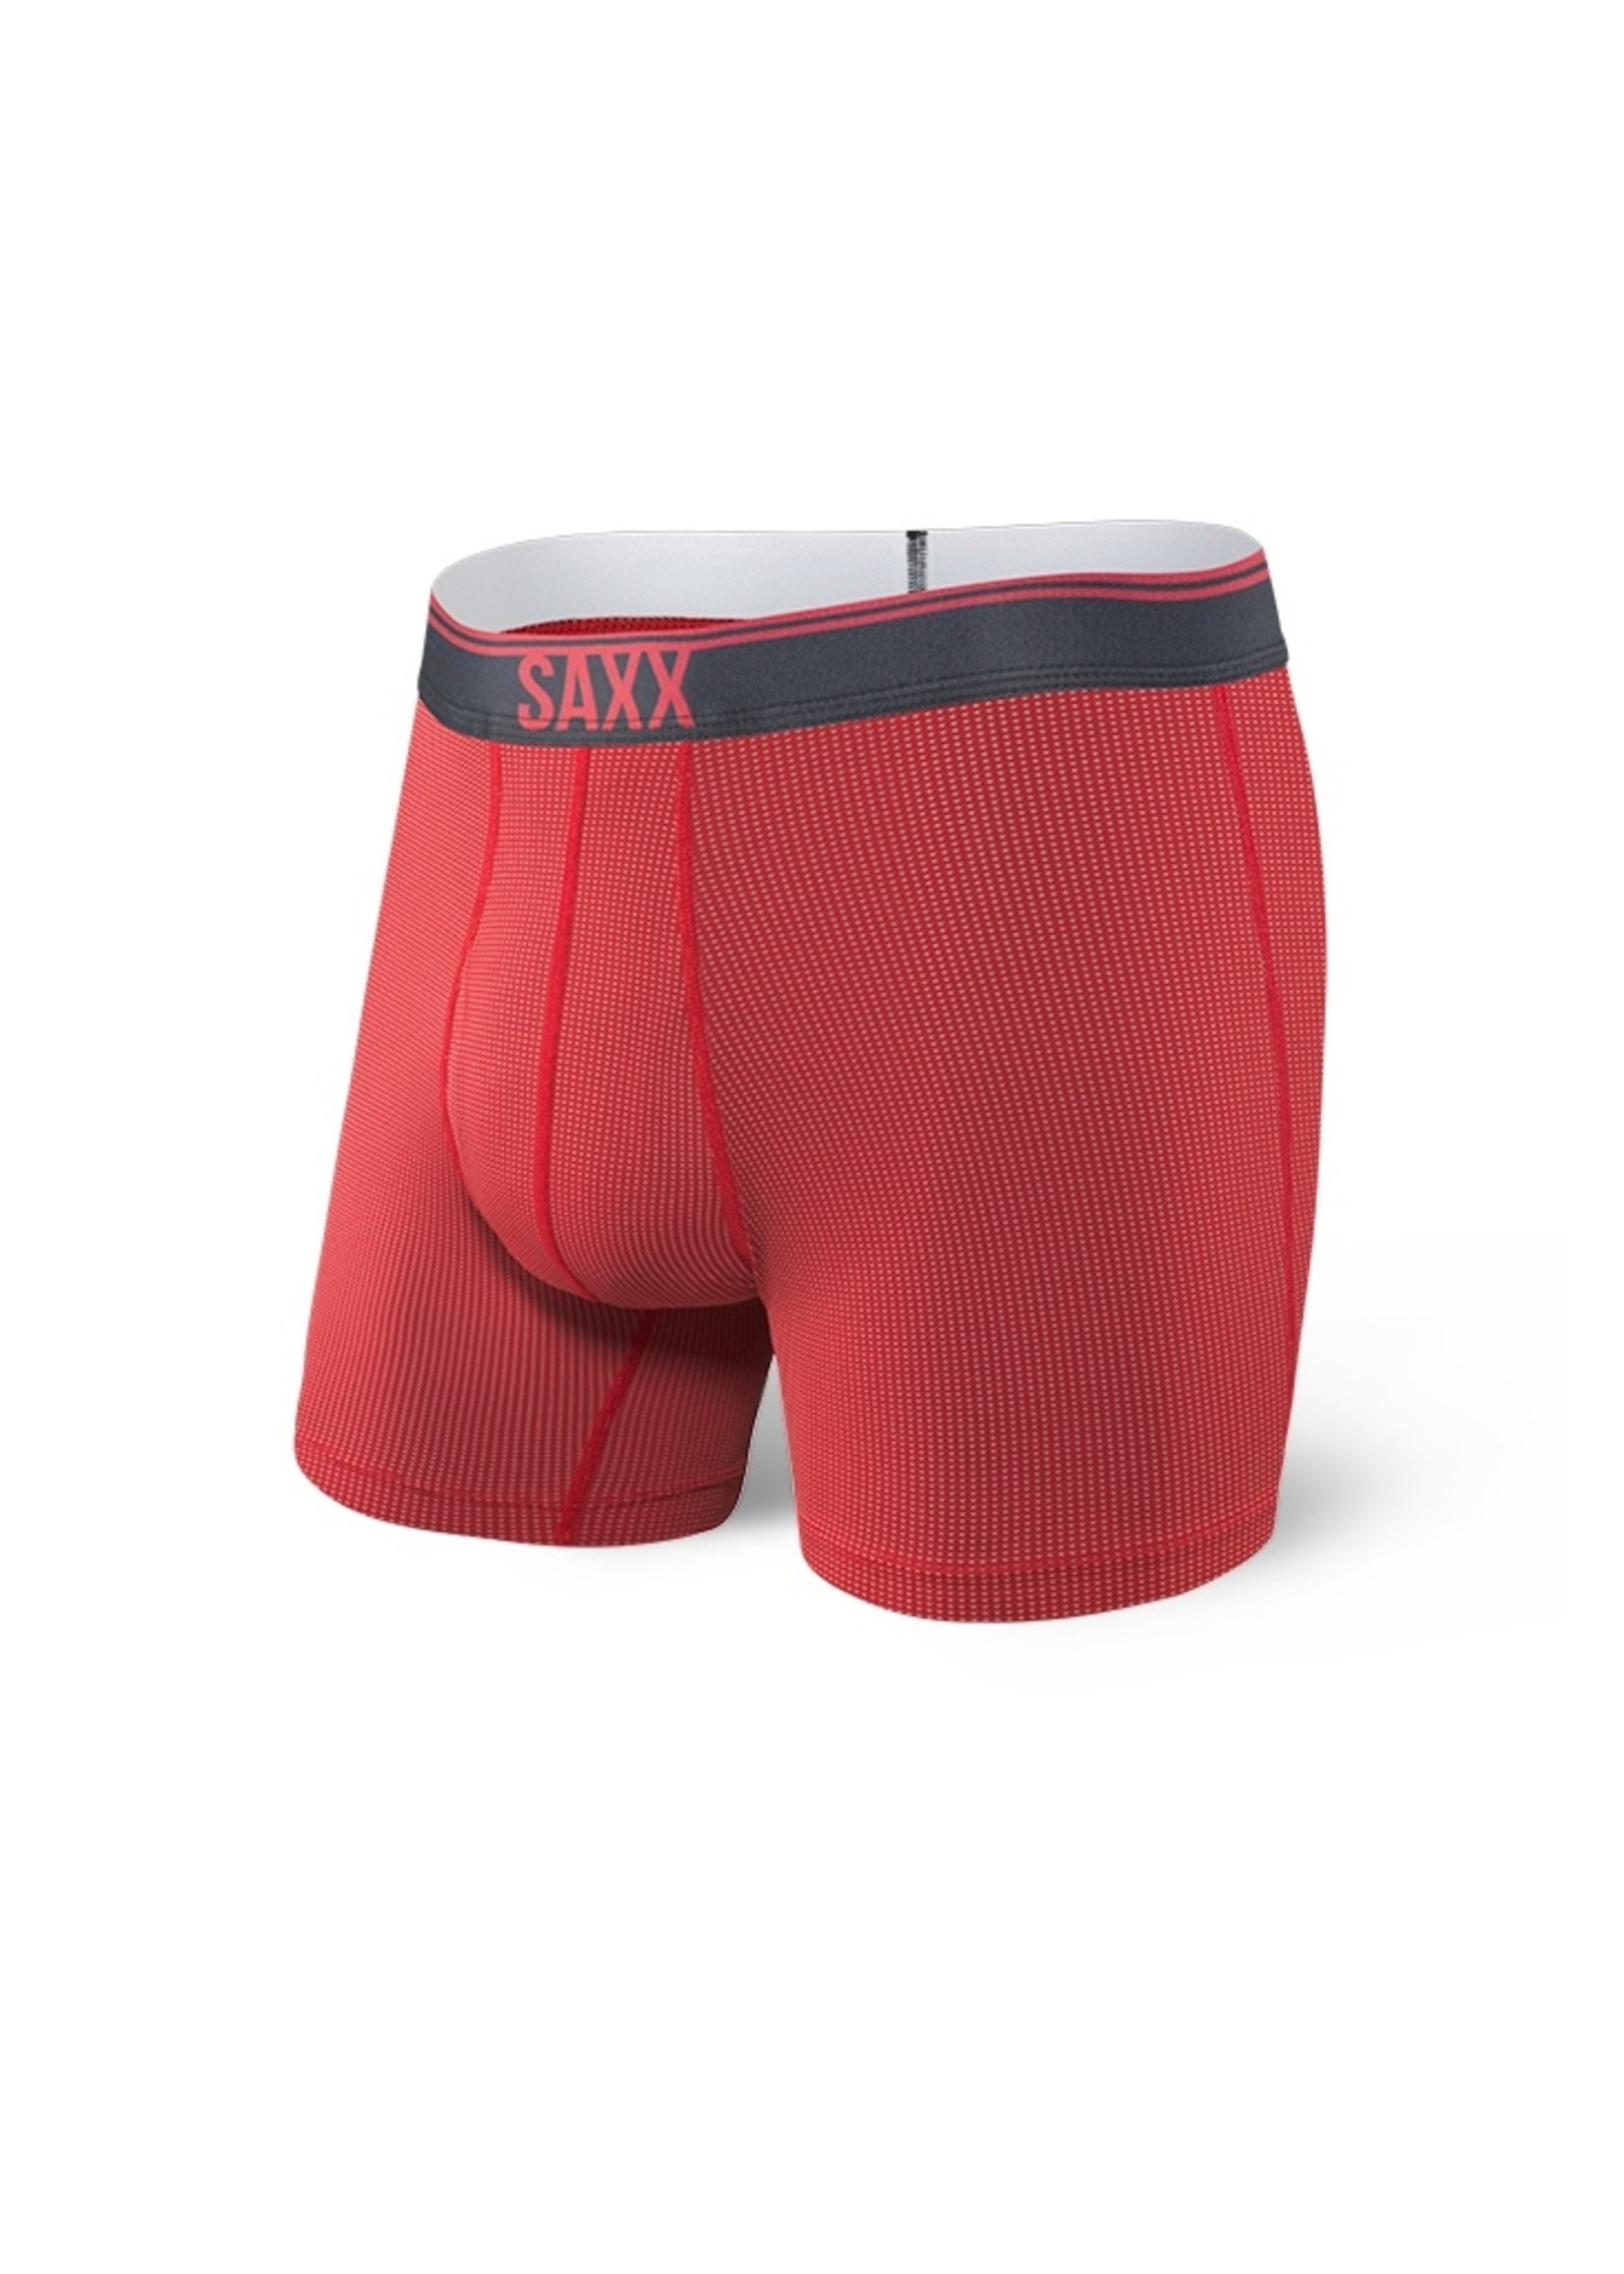 Saxx Quest 2.0 Boxer Brief